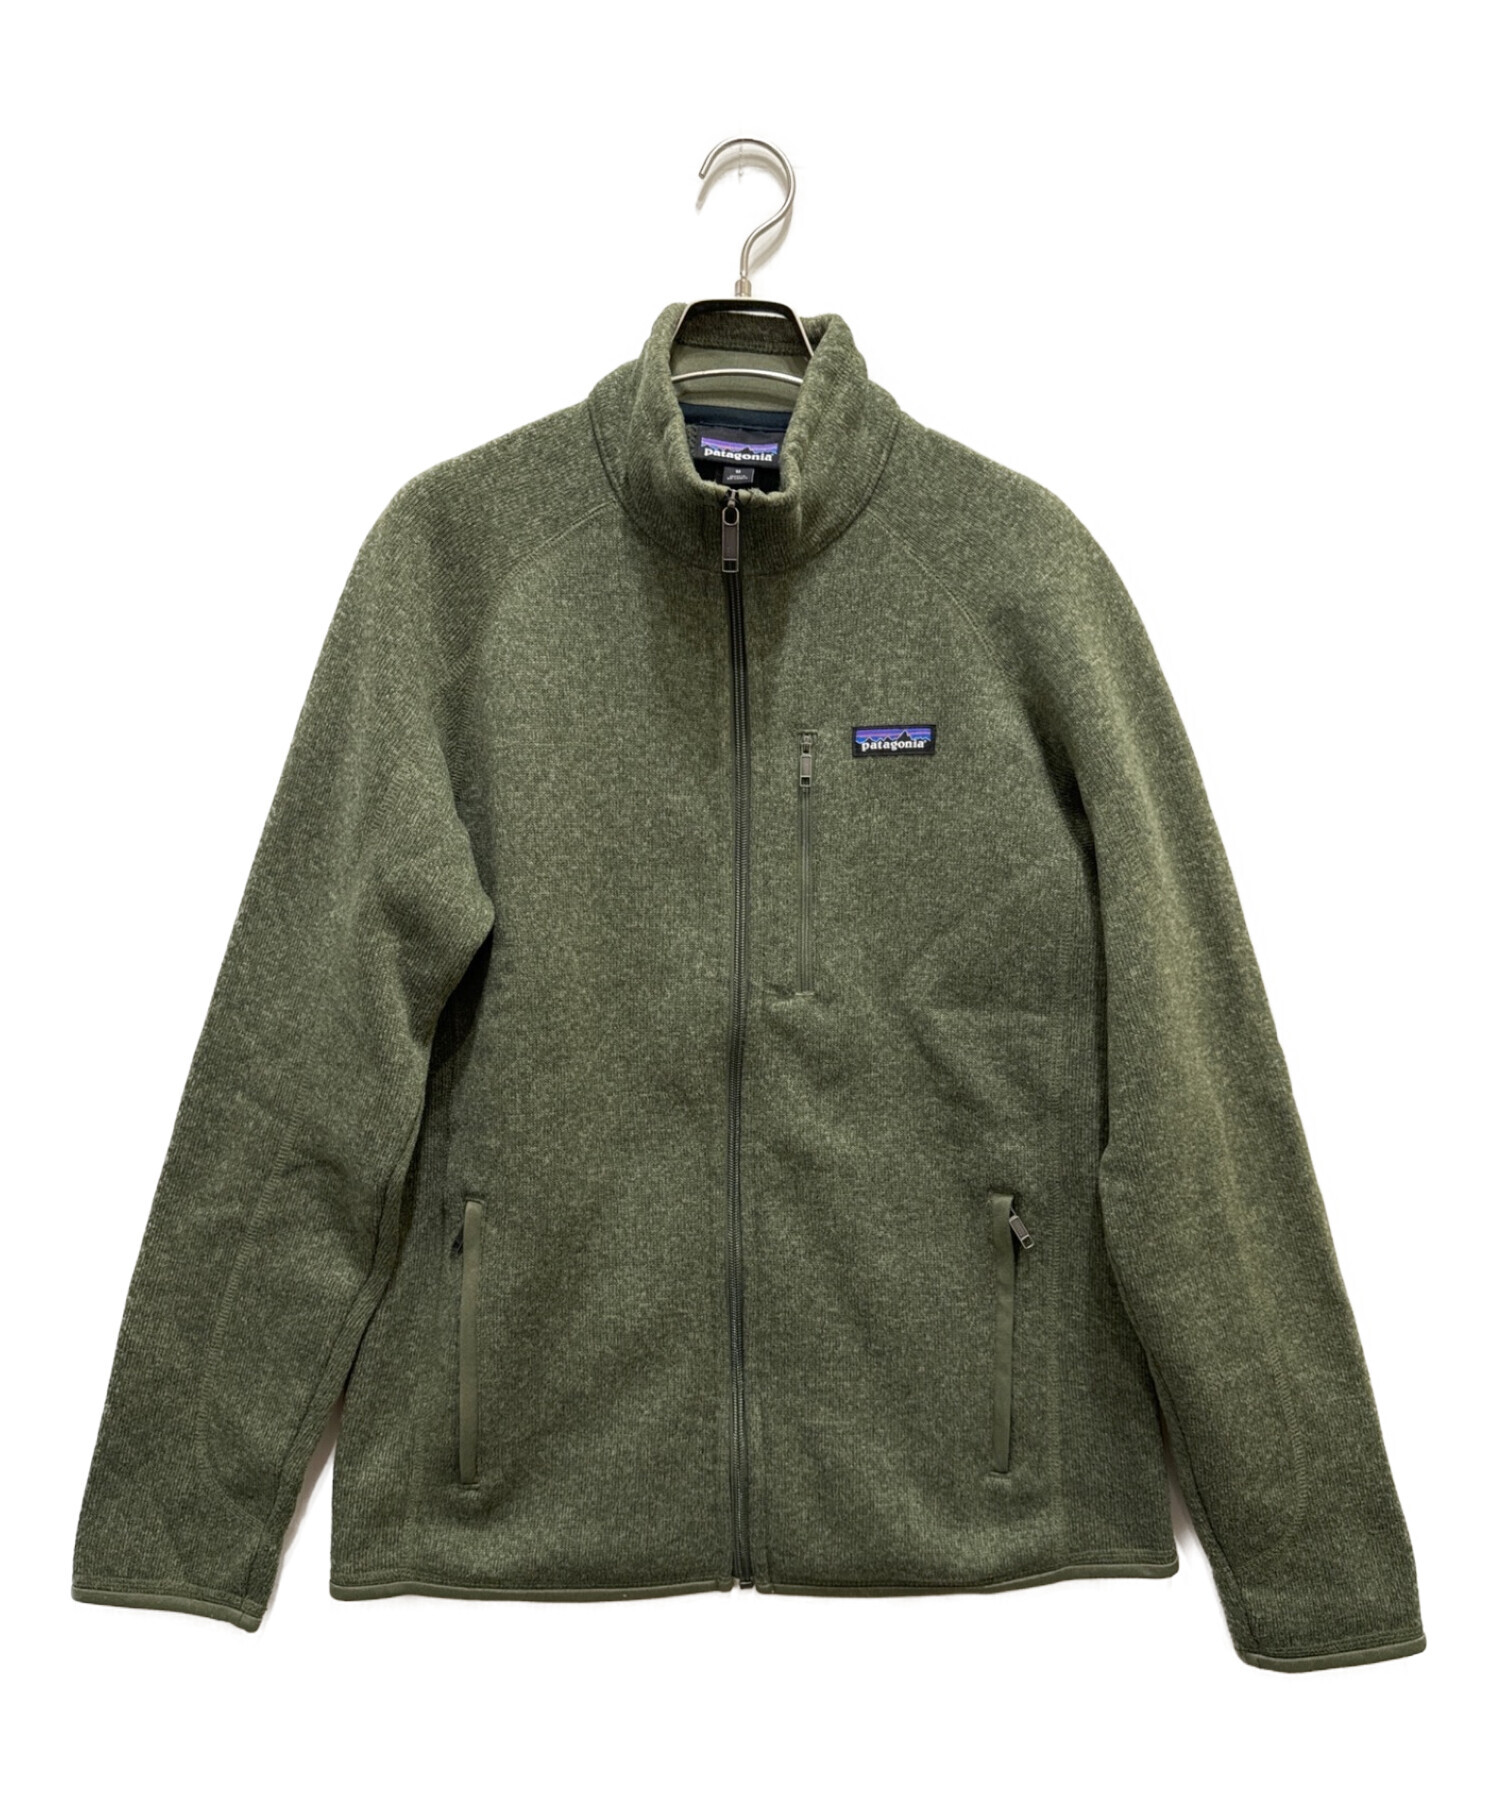 PATAGONIA ベター・セーター・ジャケット サイズM新品に近い美品です